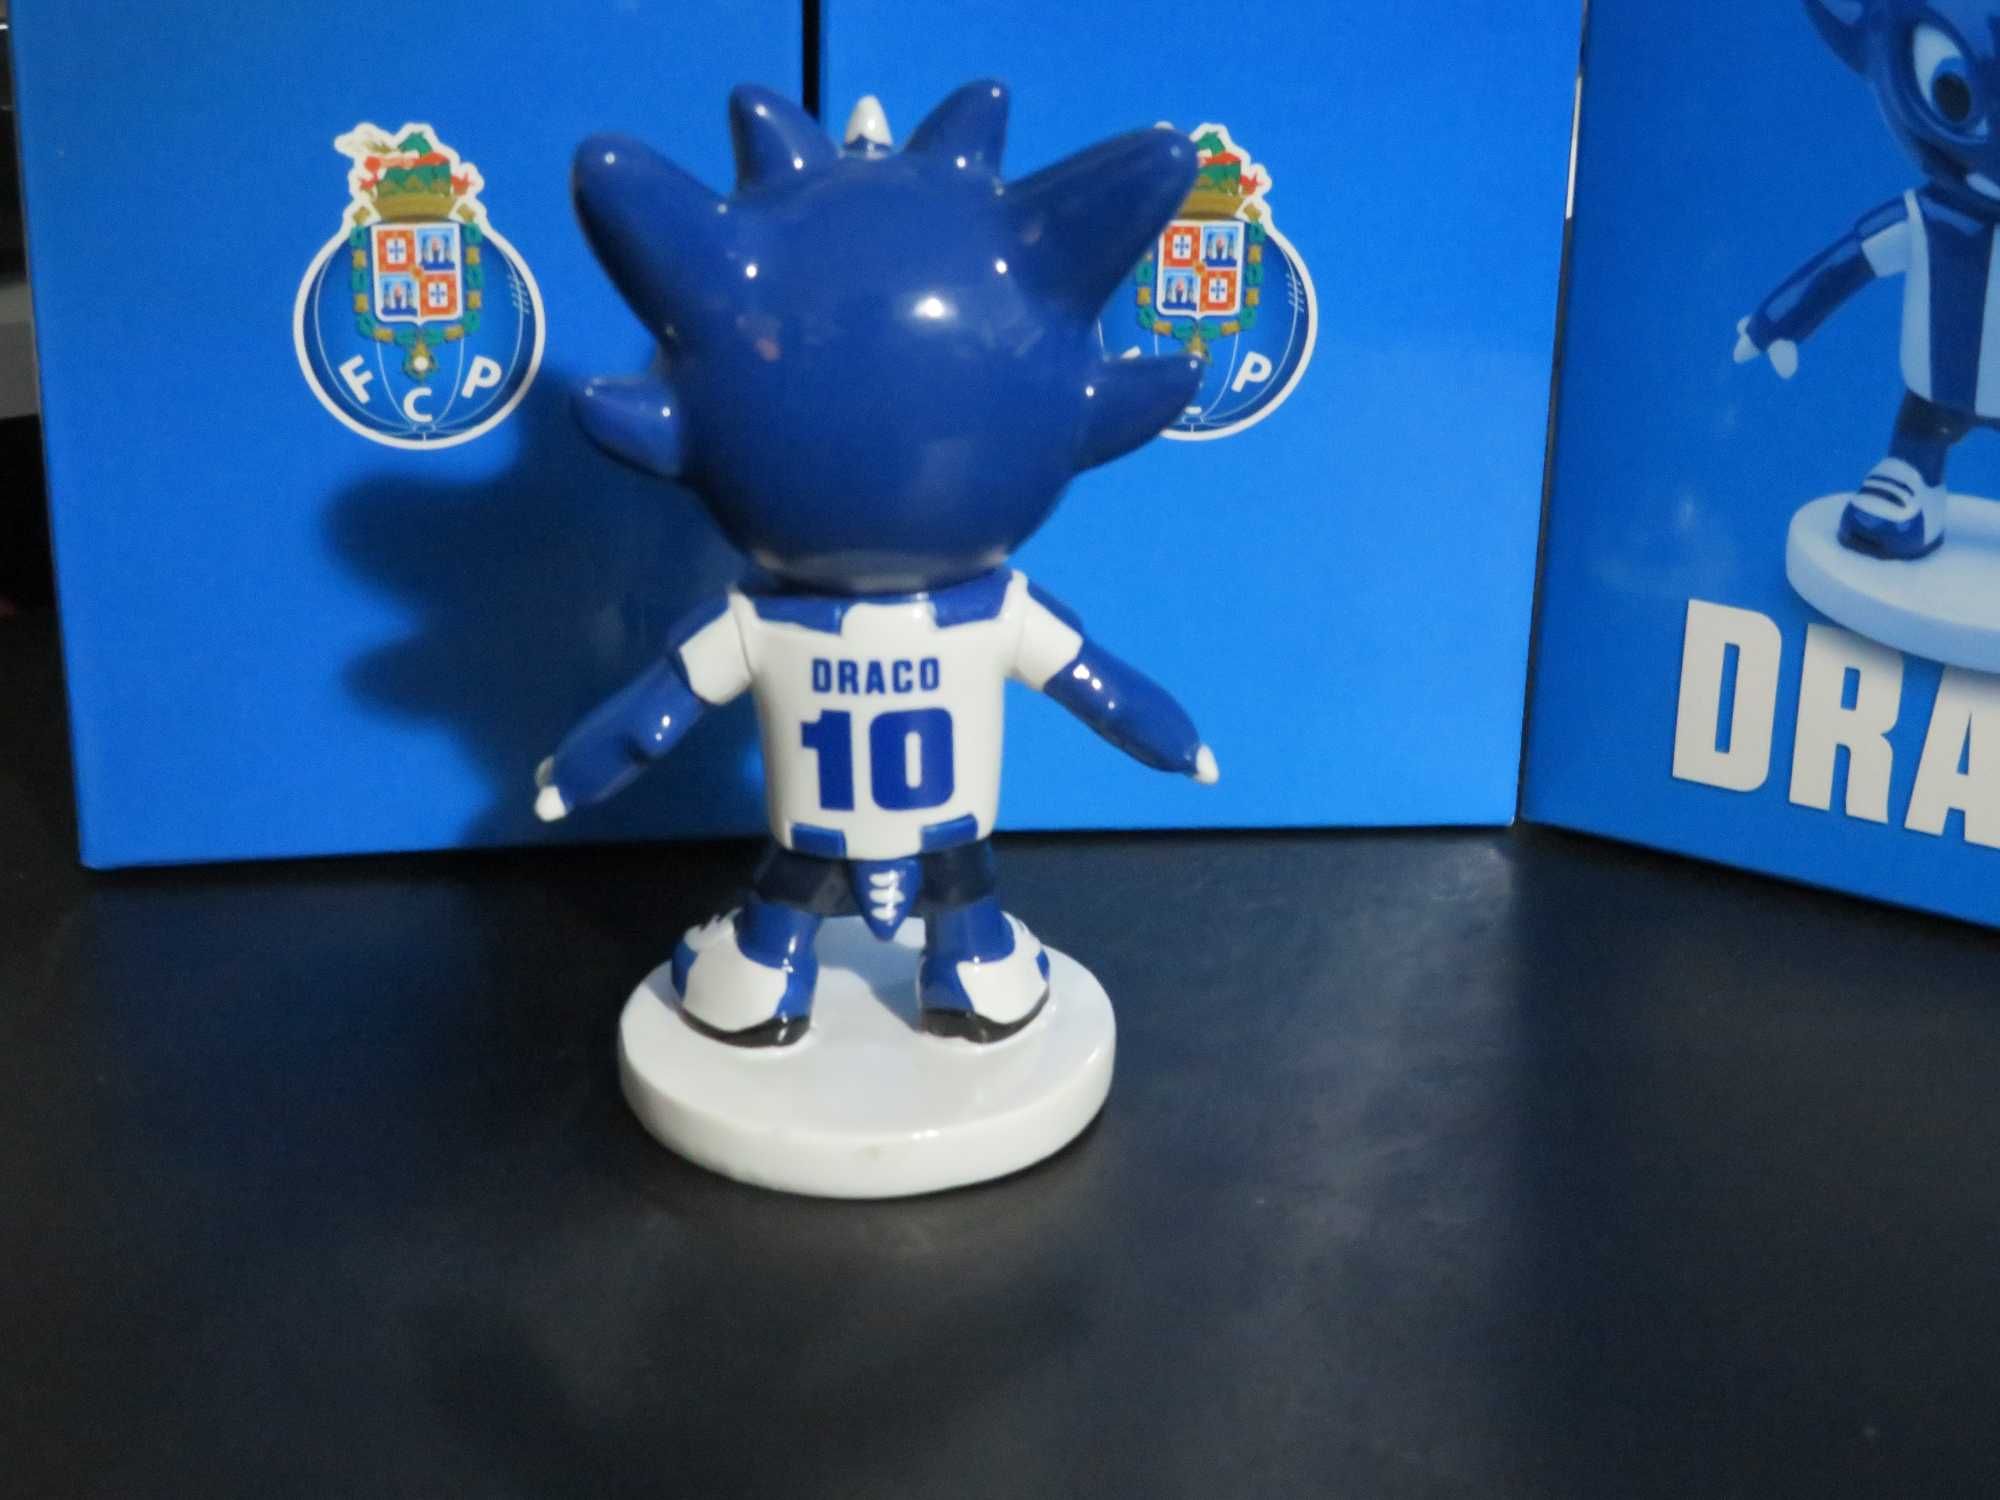 Figura Draco Mascote Futebol Clube do Porto (Novo na Caixa)